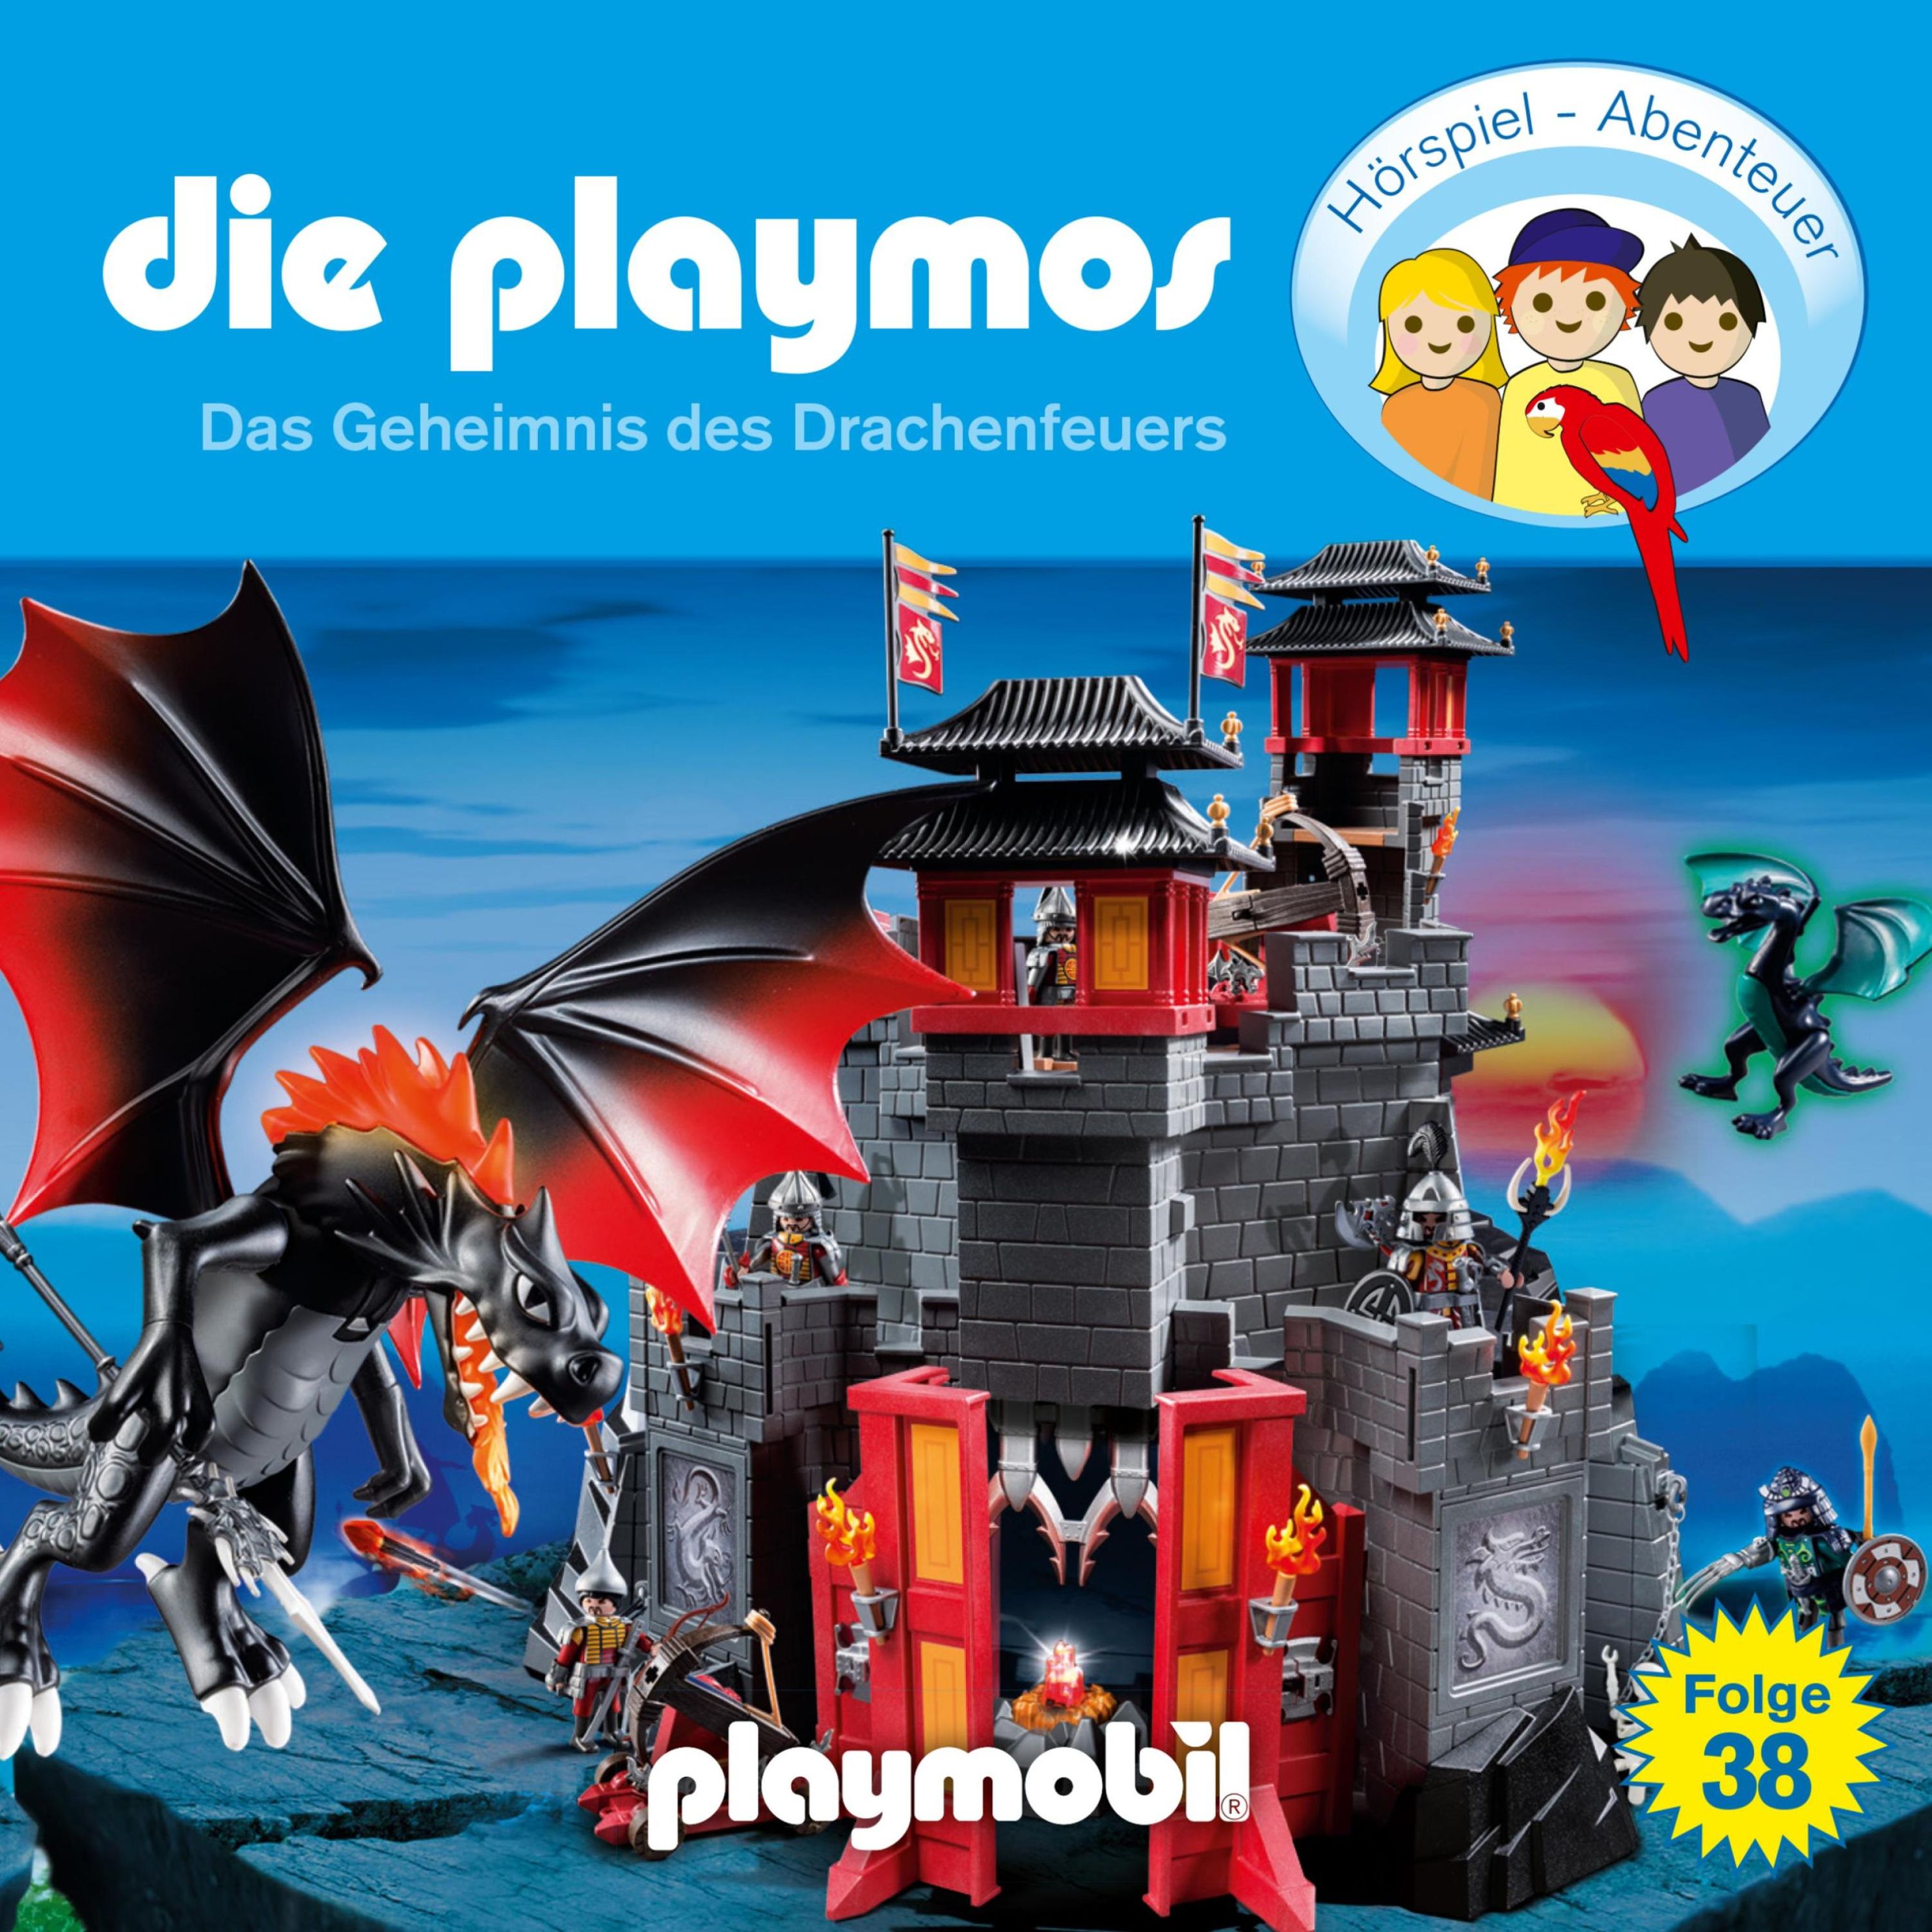 Die Playmos - Das Original Playmobil Hörspiel - 38 - Die Playmos - Das  Original Playmobil Hörspiel, Folge 38: Das Geheimnis des Drachenfeuers  Hörbuch Download